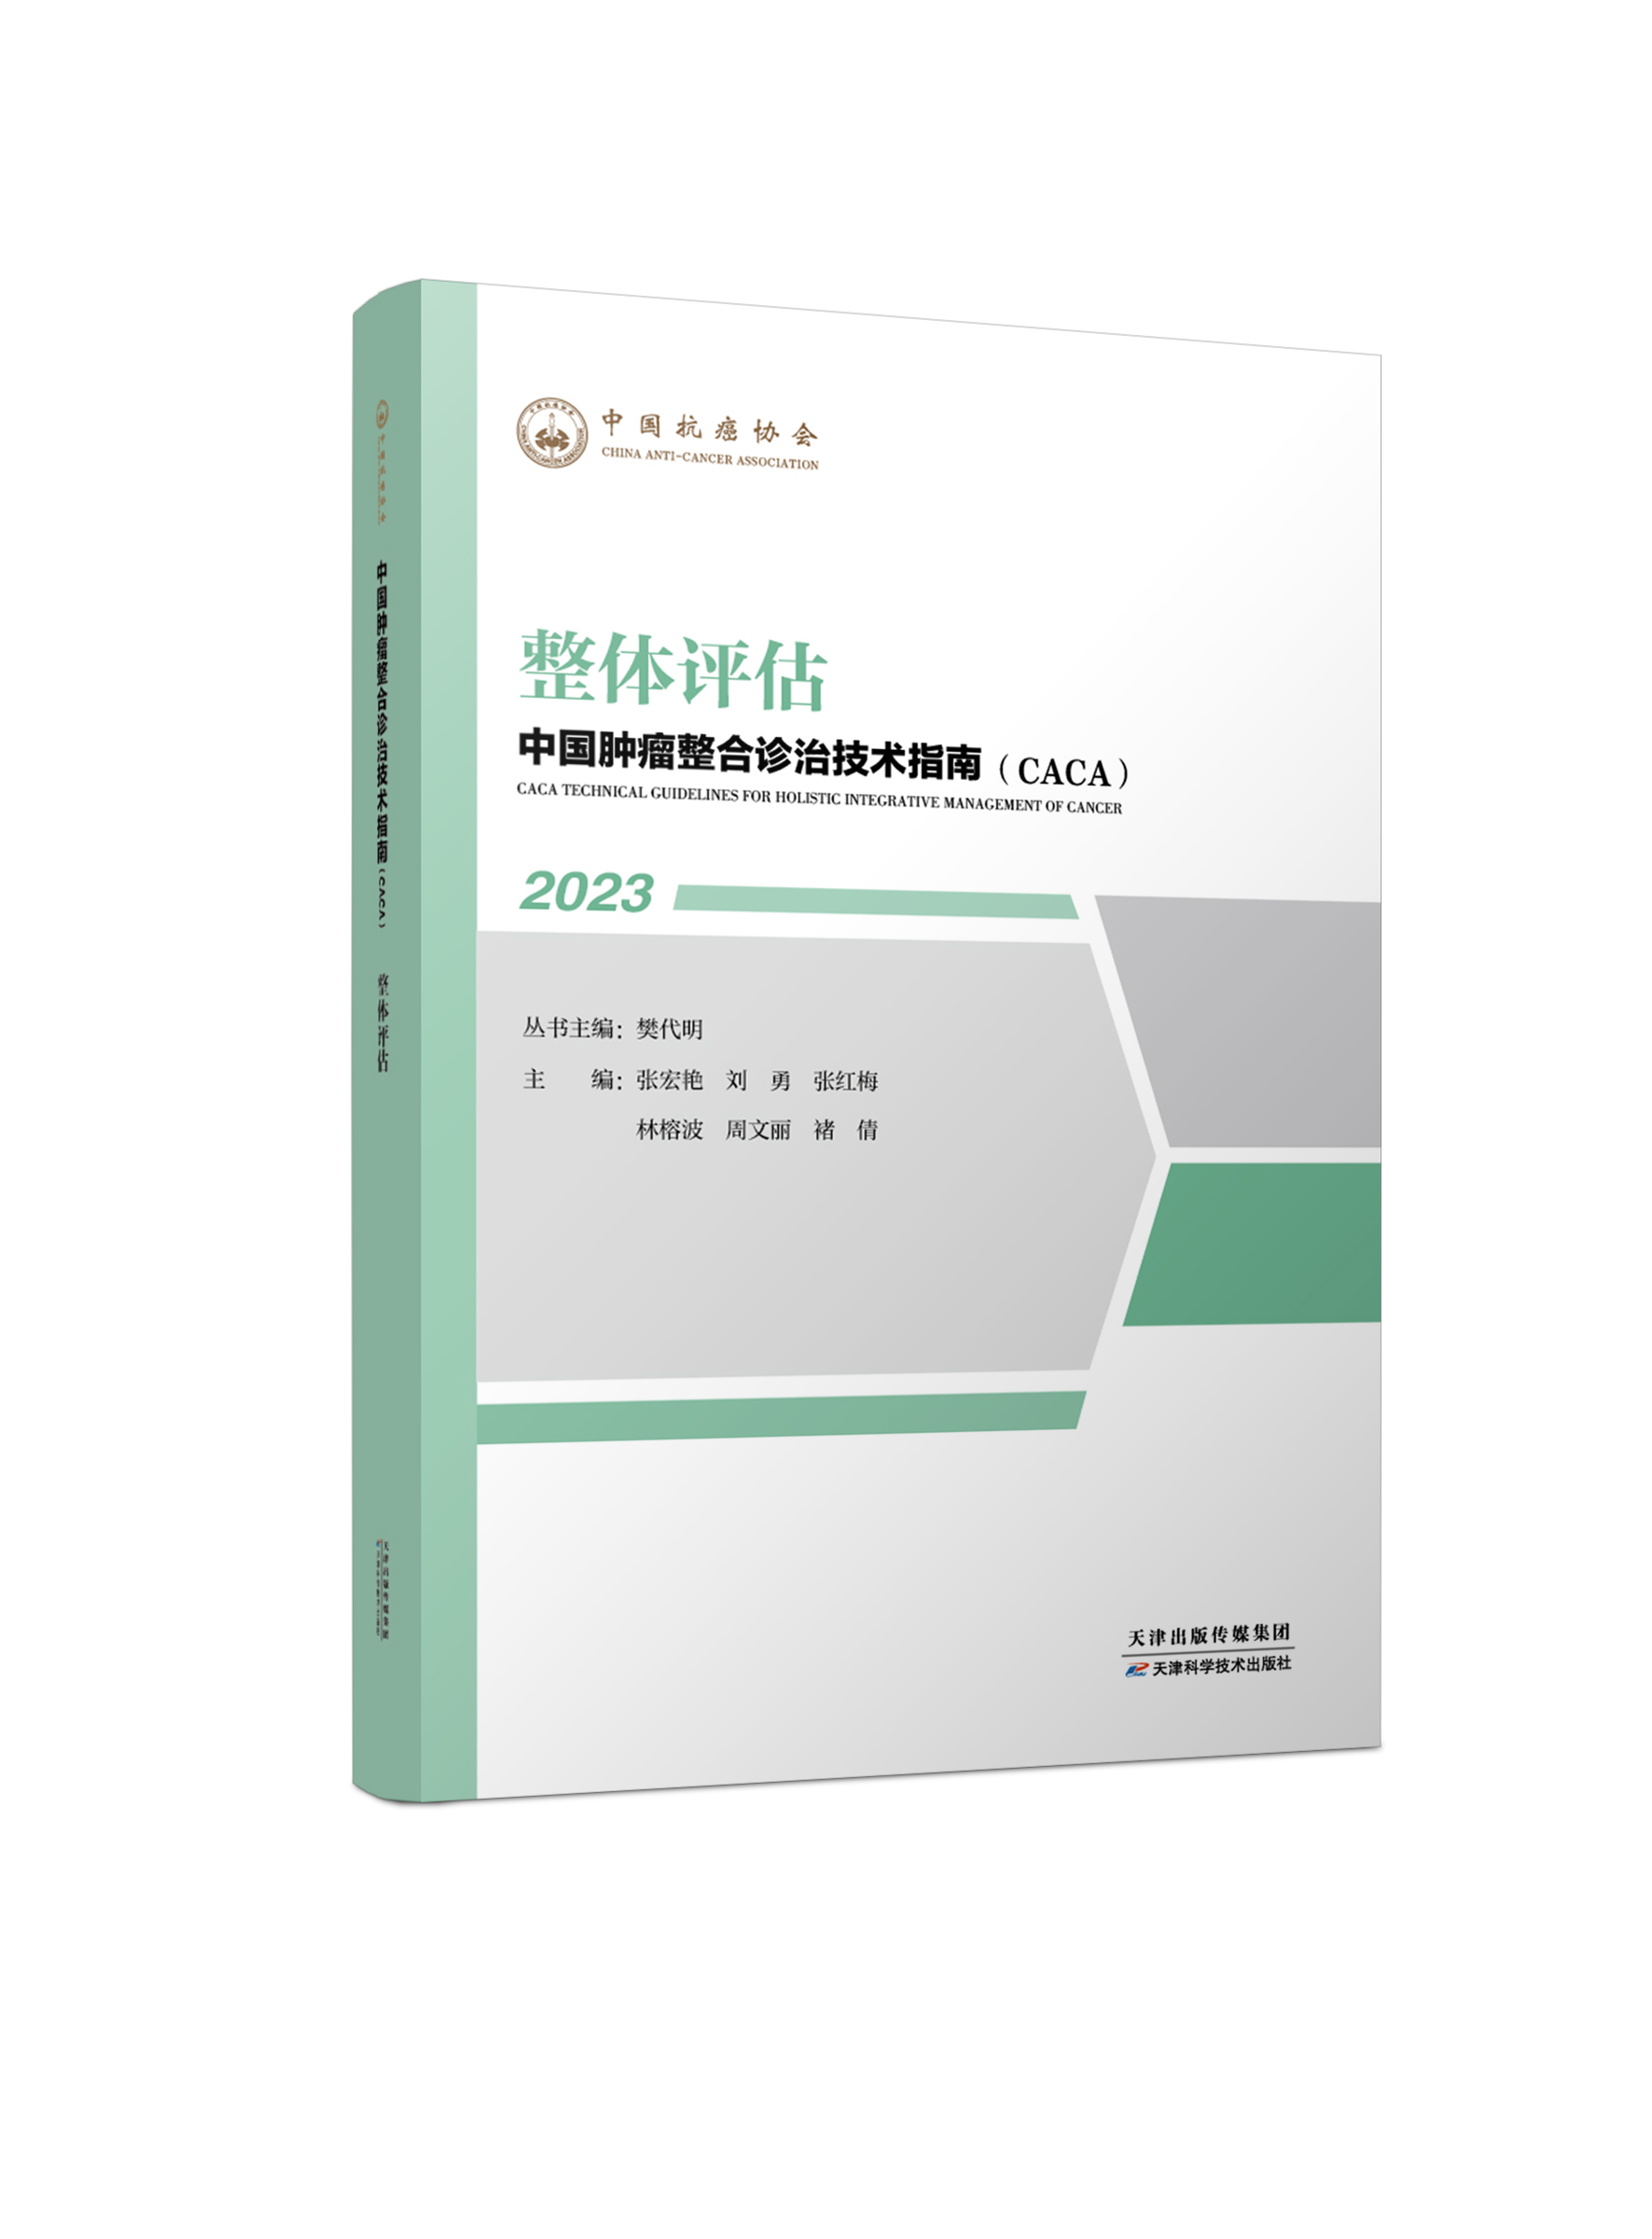 中国肿瘤整合诊治技术指南（CACA）-整体评估